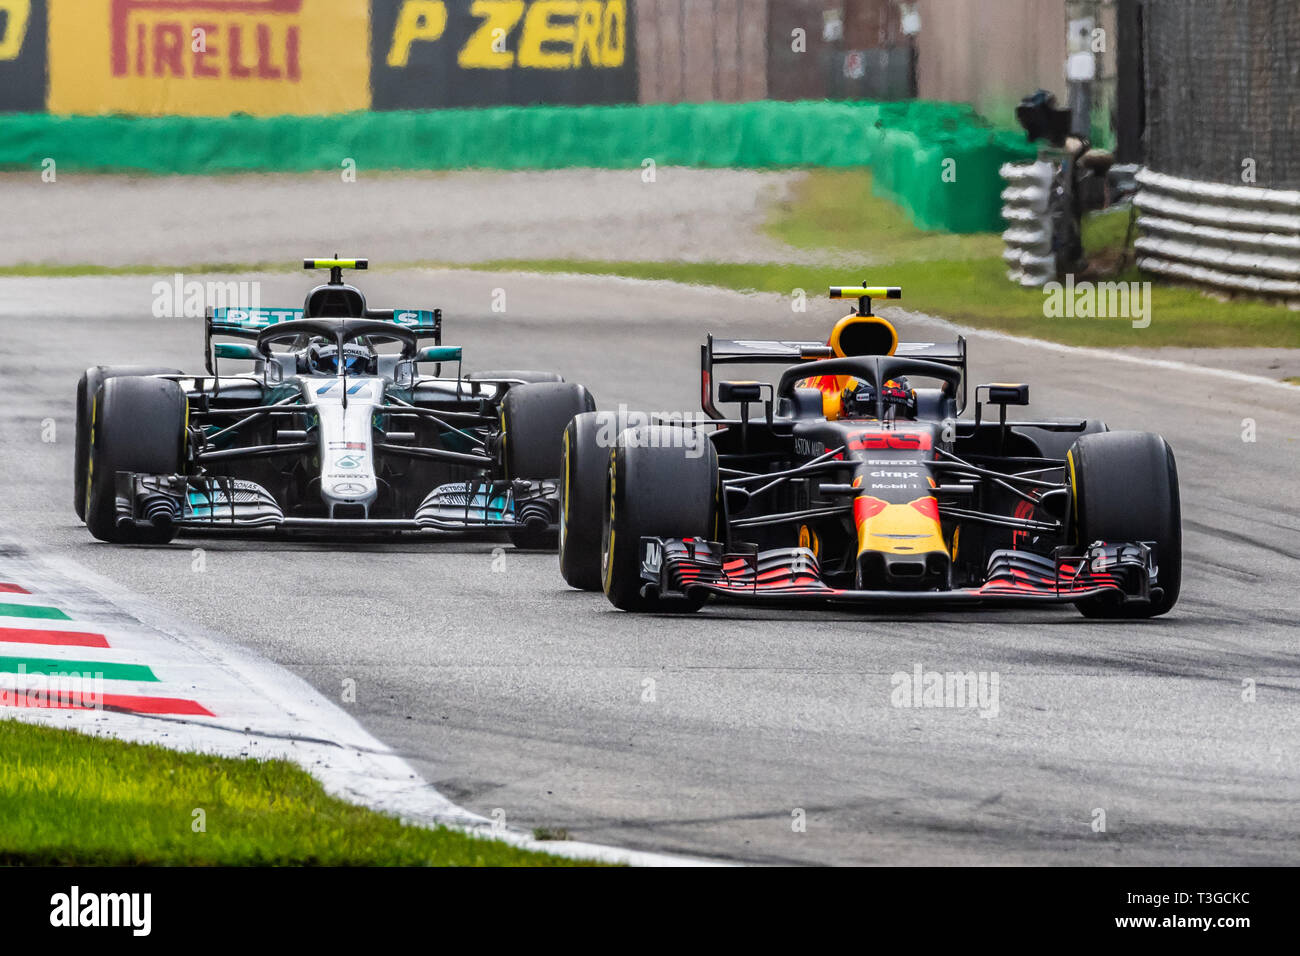 Monza/Italia - #33 Max Verstappen e #77 Valtteri Bottas lottano per la posizione durante il GP DI ITALIA Foto Stock